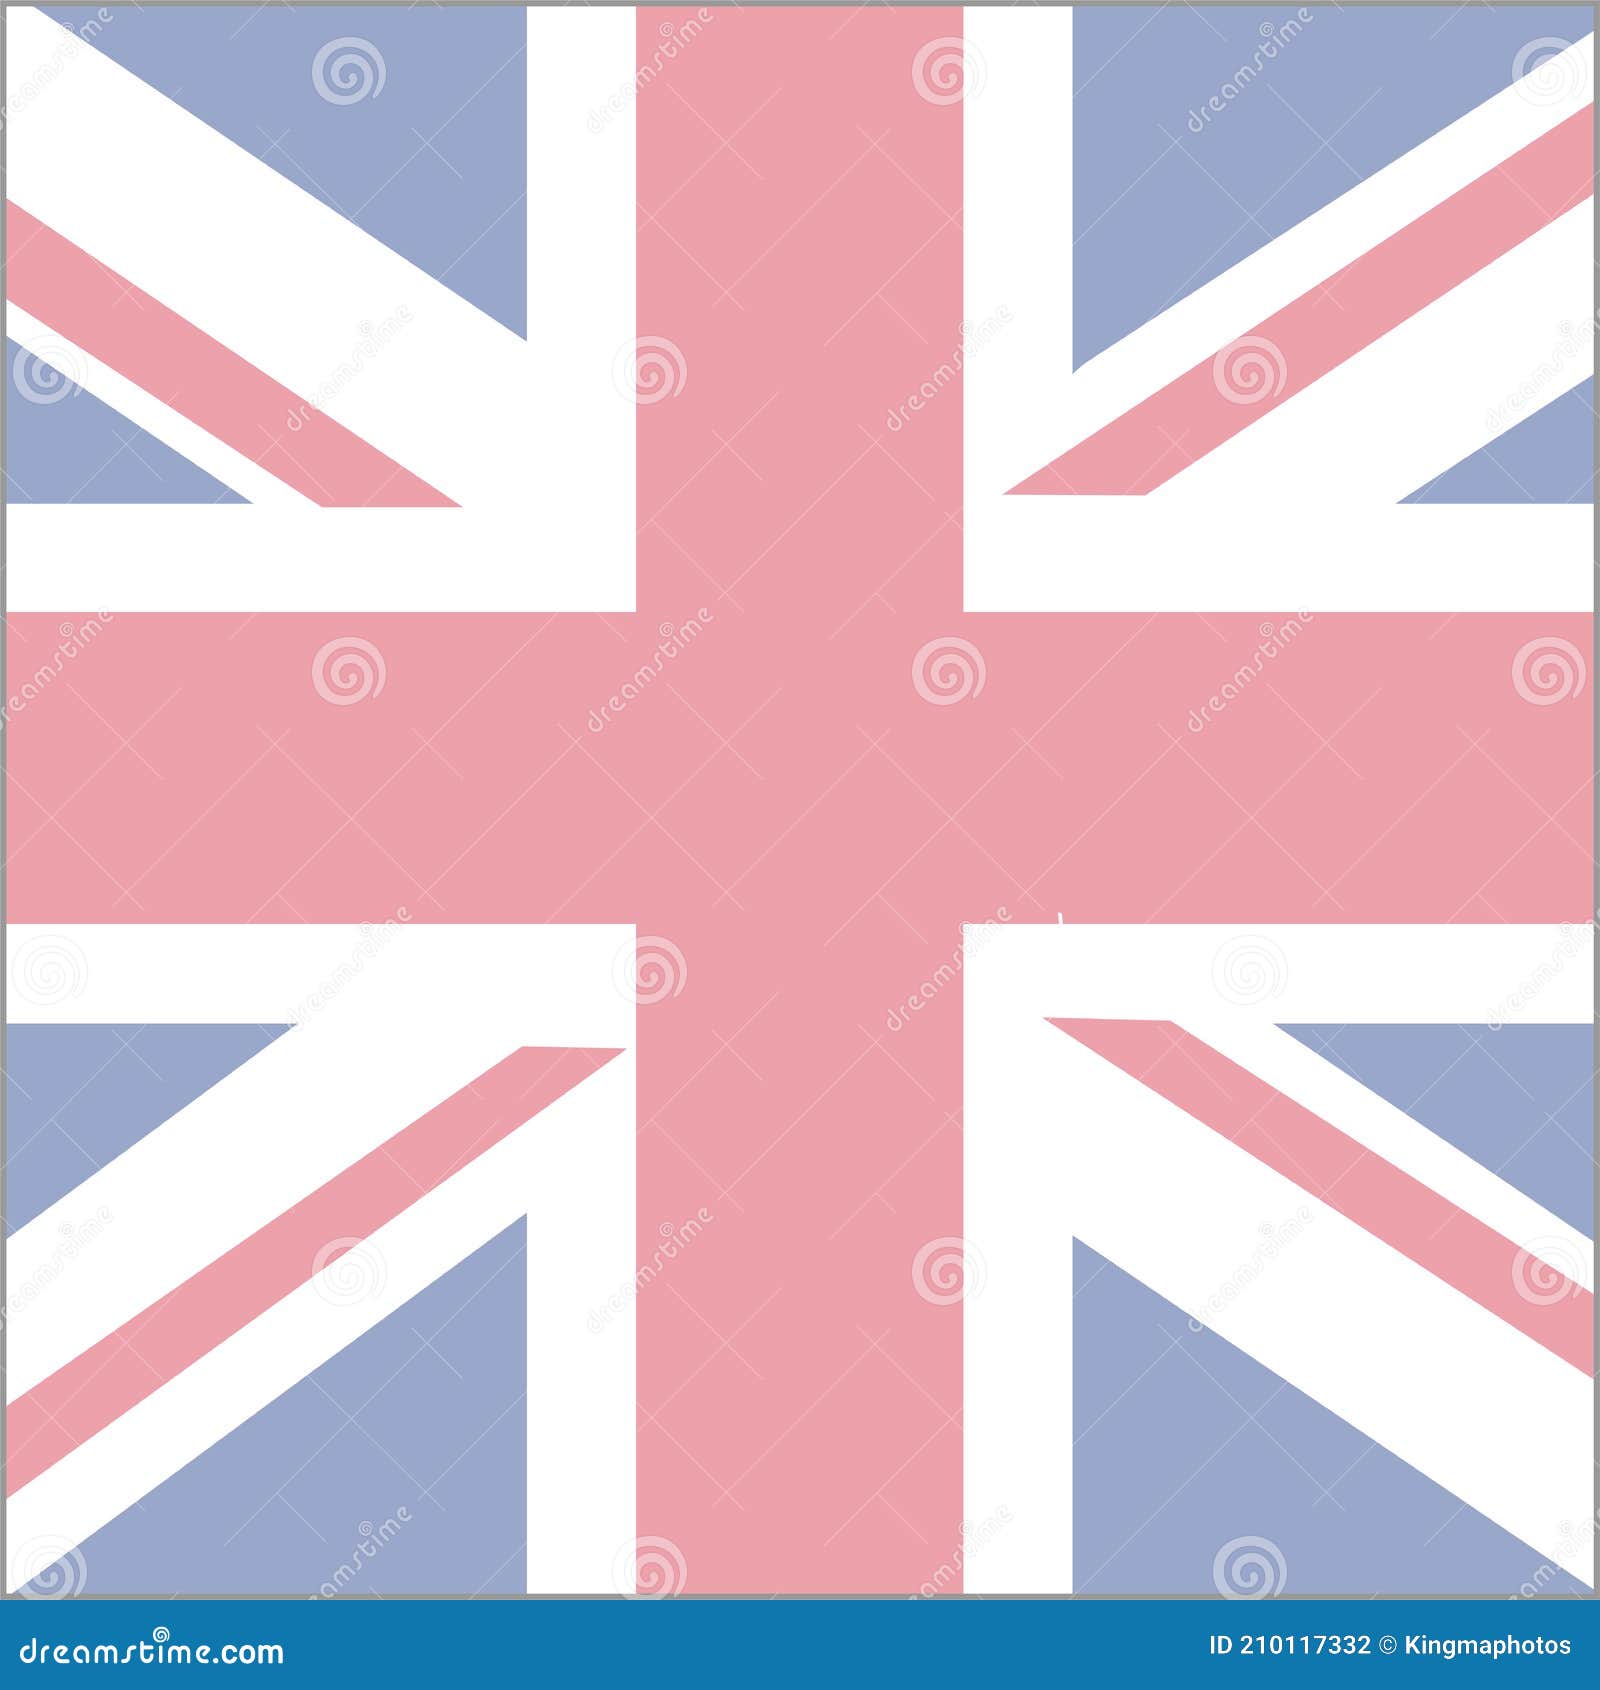 Hãy xem những hình ảnh liên quan đến lá cờ Liên hiệp Vương quốc Anh - một trong những biểu tượng văn hóa phổ biến nhất trên thế giới, với thiết kế đầy màu sắc và độc đáo.